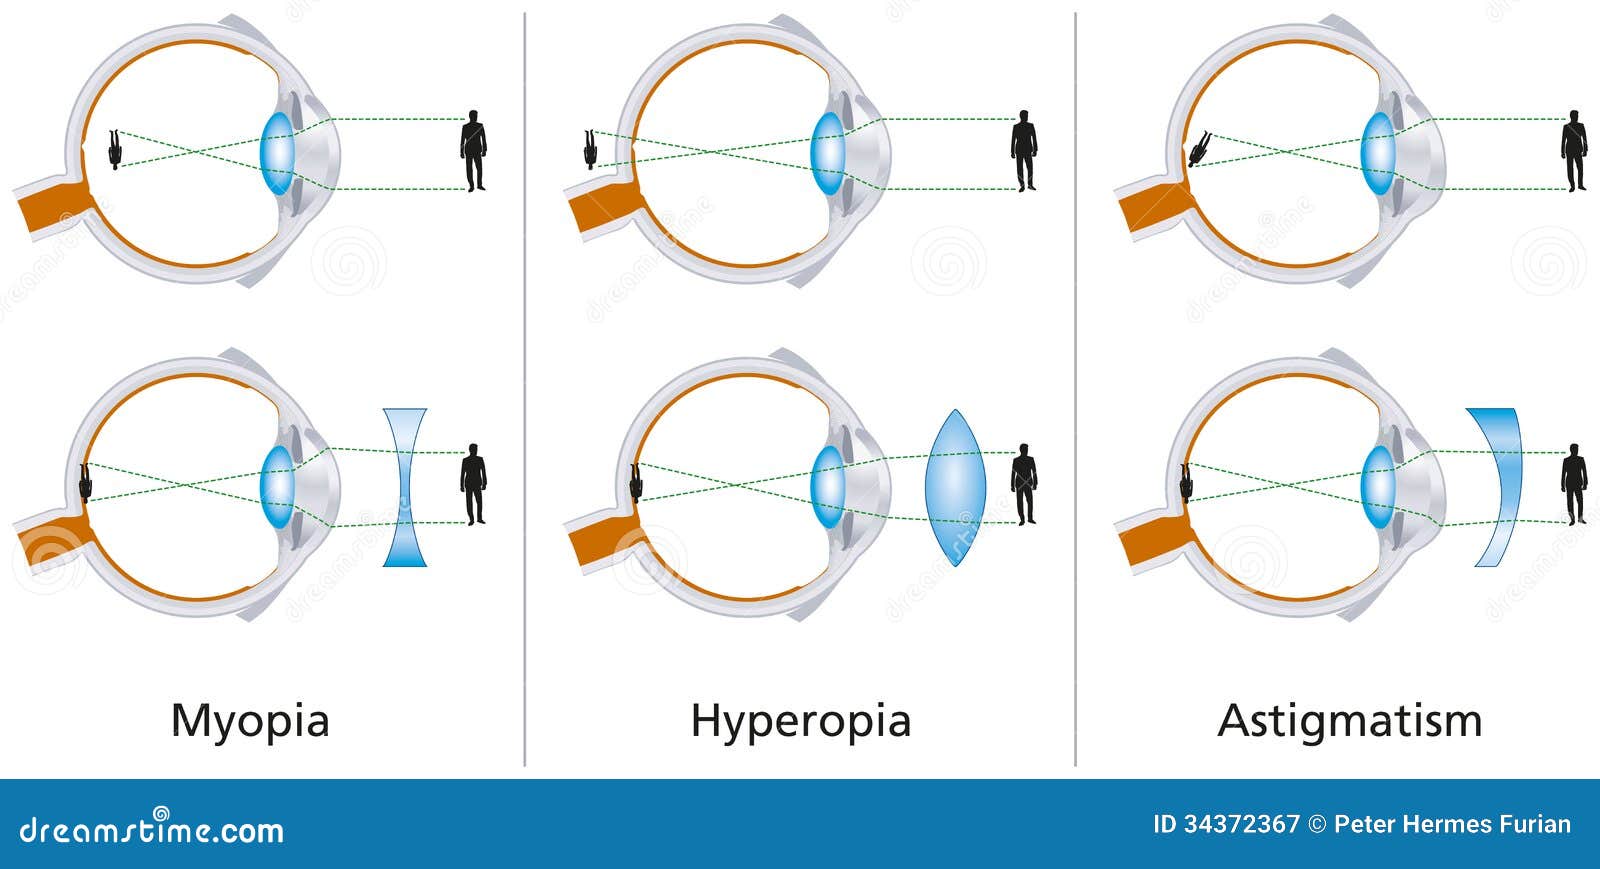 az asztigmatizmus myopia vagy hyperopia